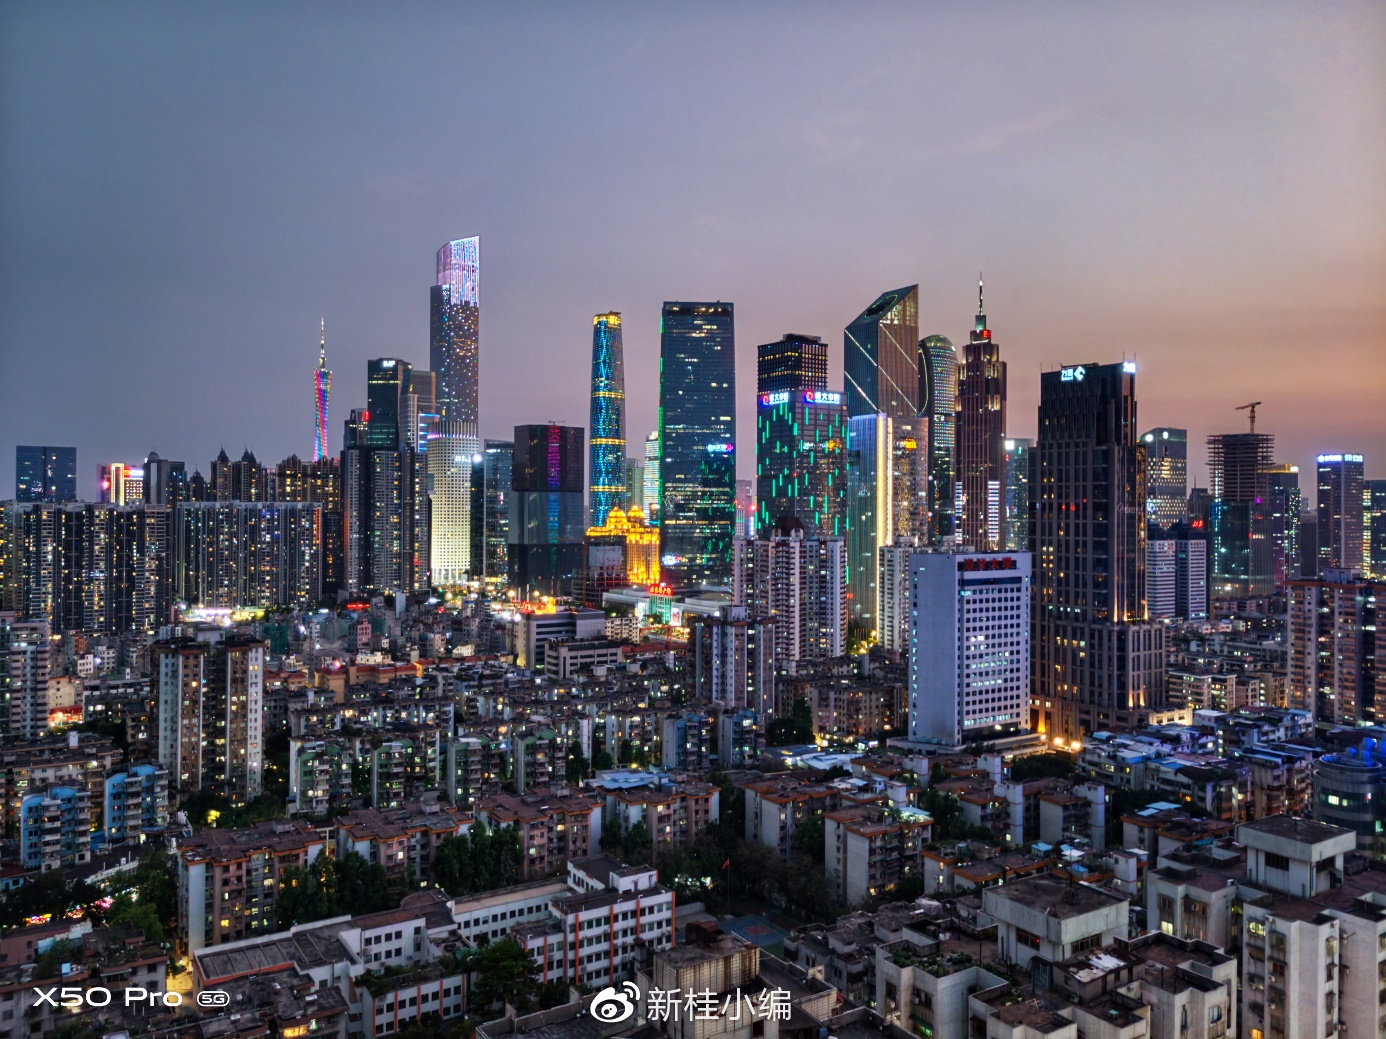 نمونه عکس ویوو X50 پرو ساختمان های بلند شهر شلوغ چراغ روشن